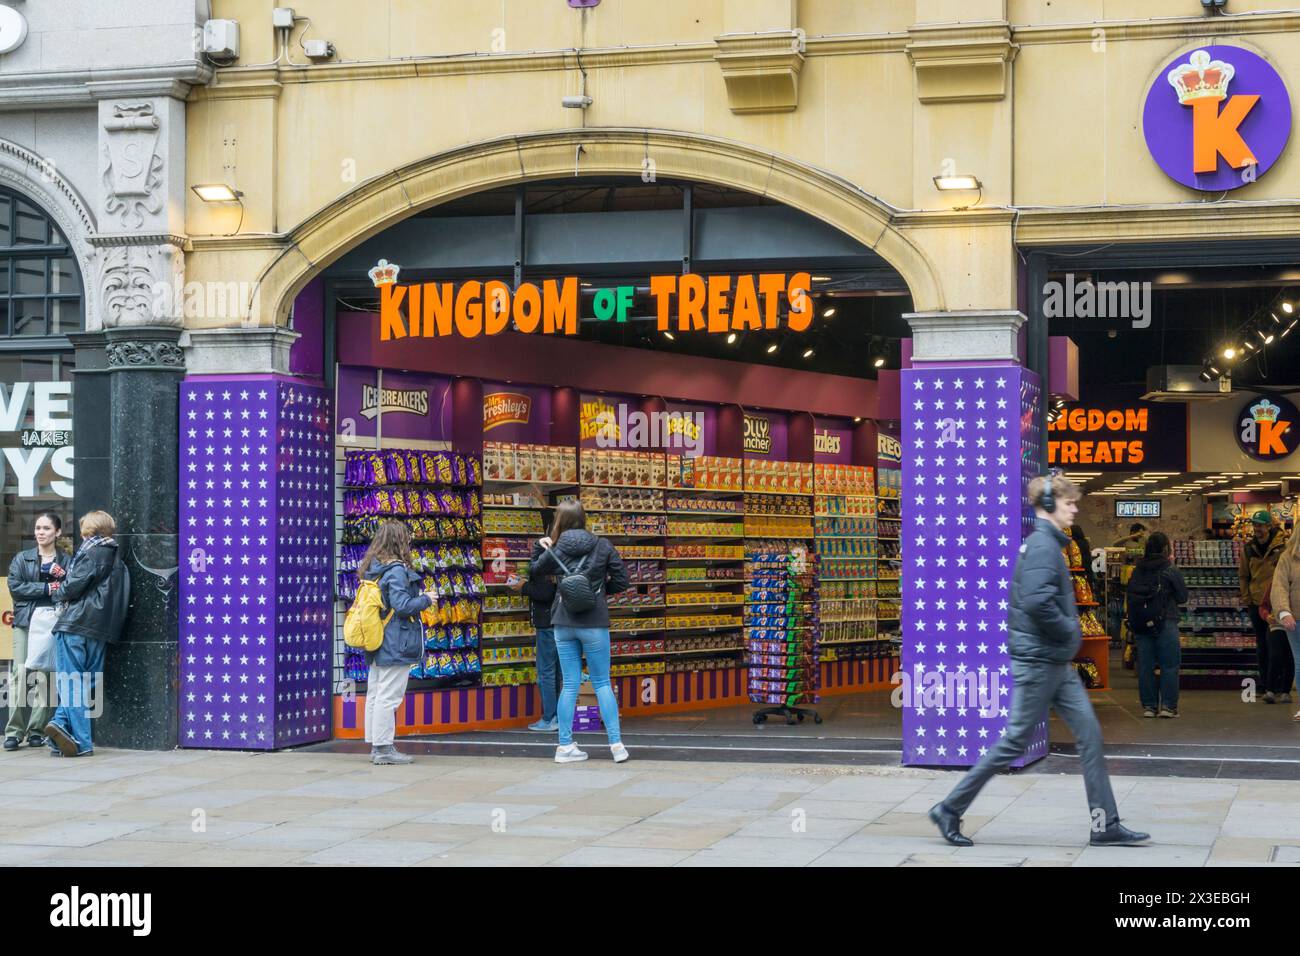 Kingdom of Treats à Coventry Street, Londres. Un magasin de bonbons de style américain précédemment nommé Kingdom of Sweets. Banque D'Images